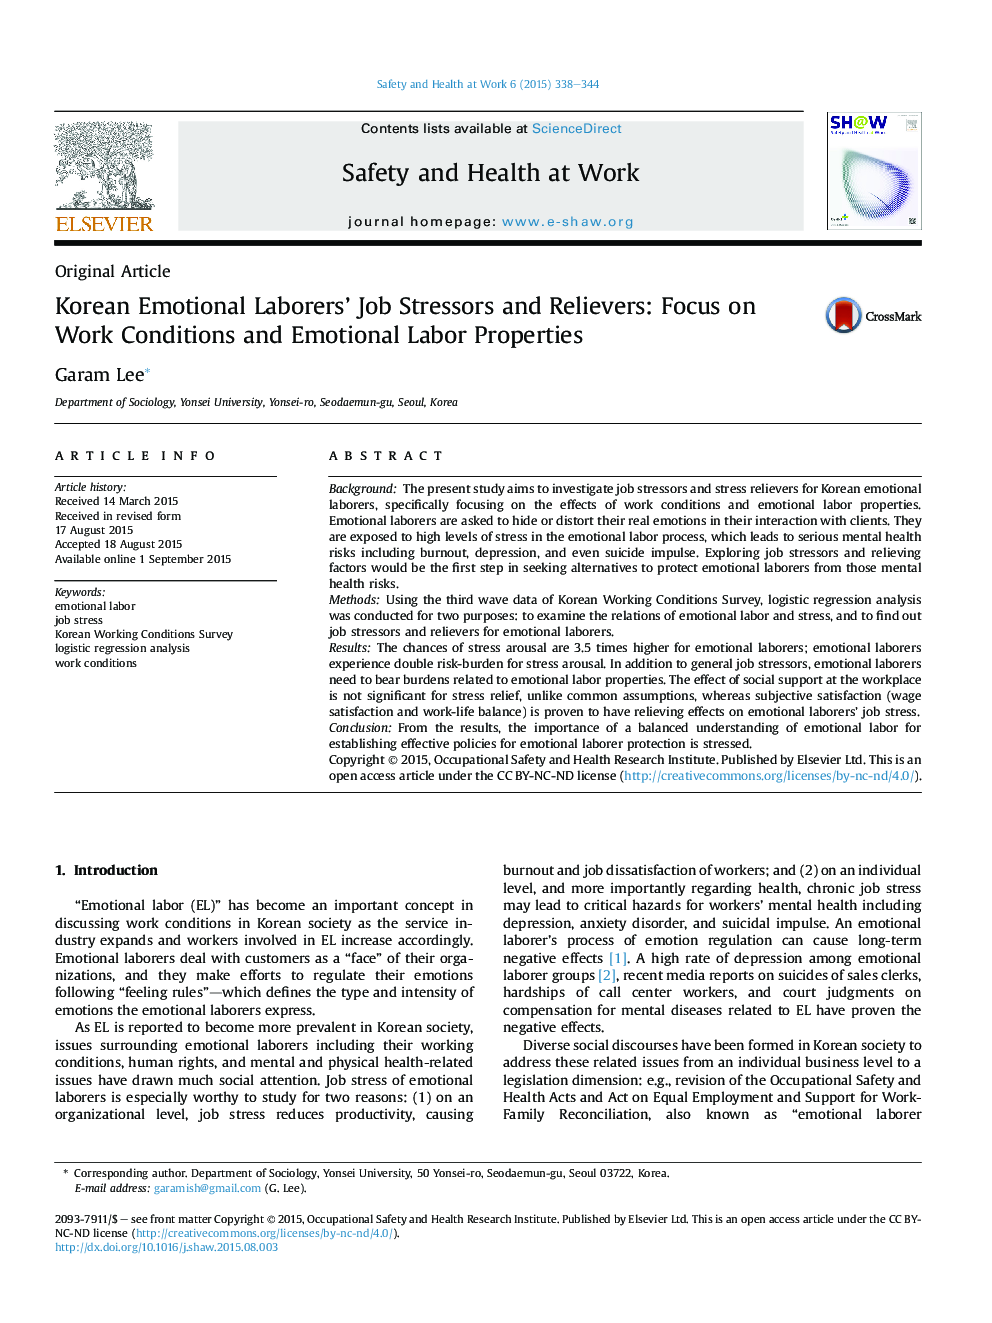 عوامل و برطرف‌کننده های تنش زای شغلی کارگران عاطفی کره ای: تمرکز بر شرایط کار و ویژگی های کار احساسی